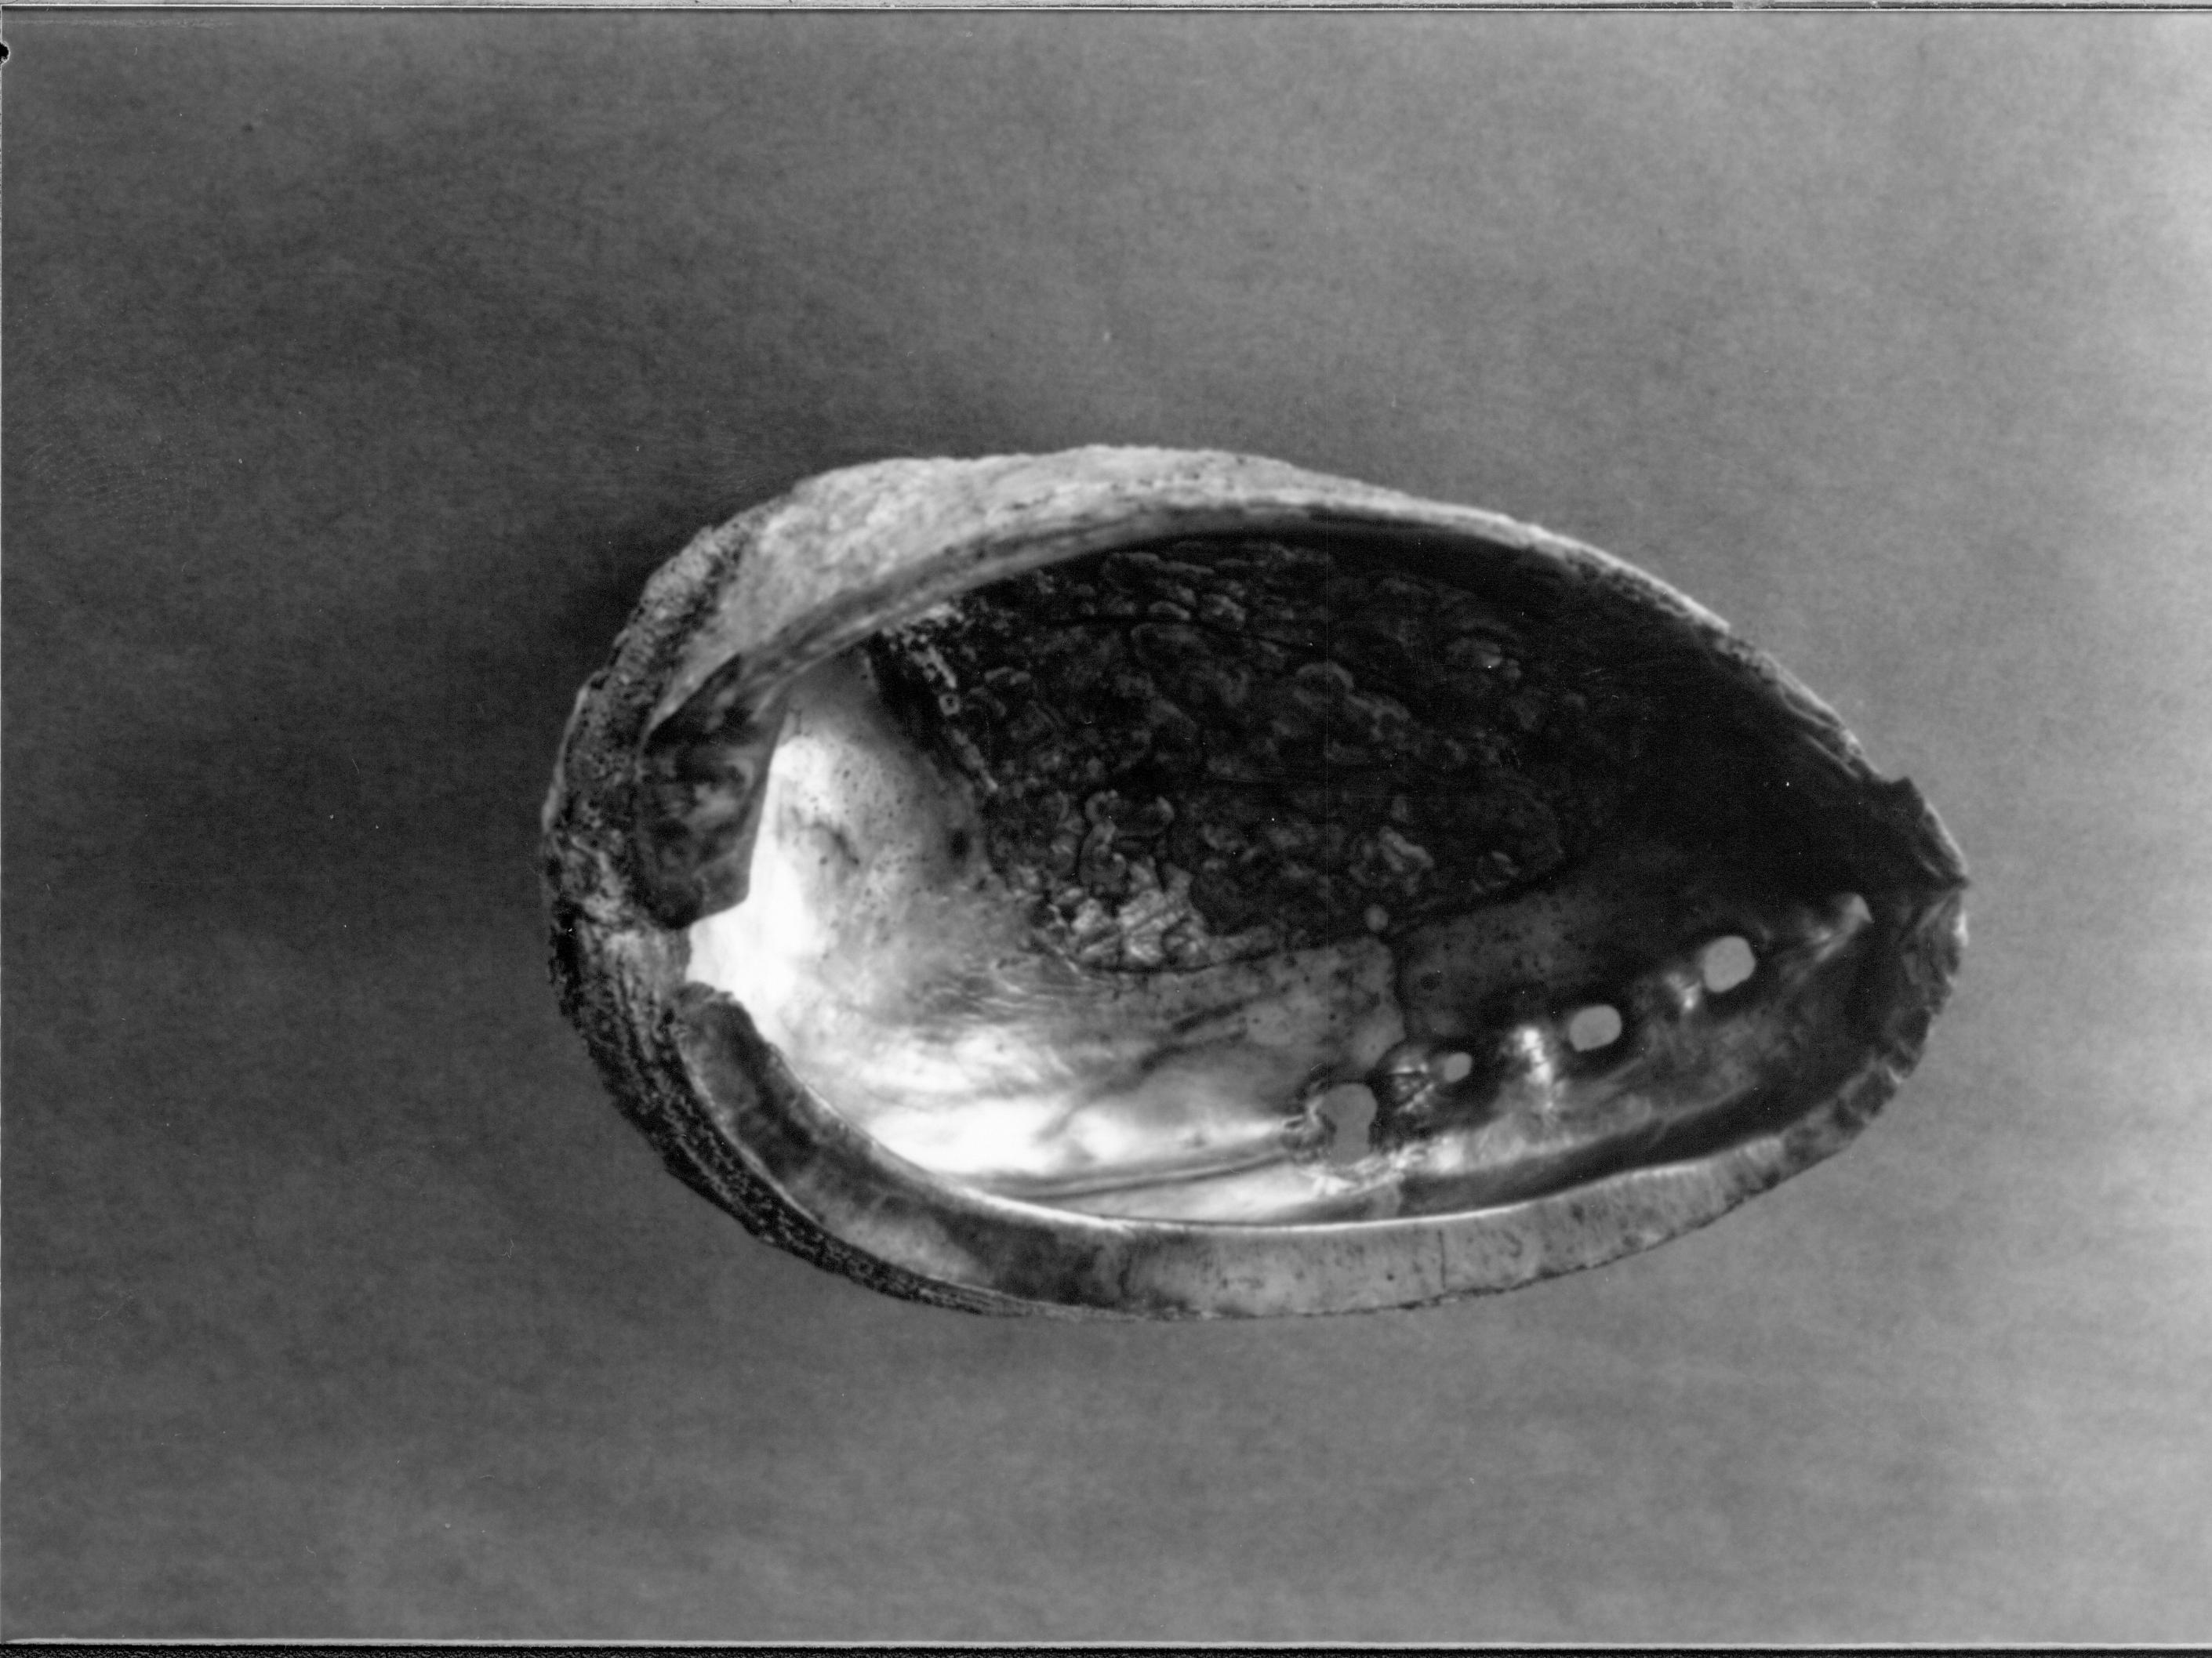 Abalone shells LIHO- 290, Abalone shells, roll 16, #23 furnishings, abalone shells